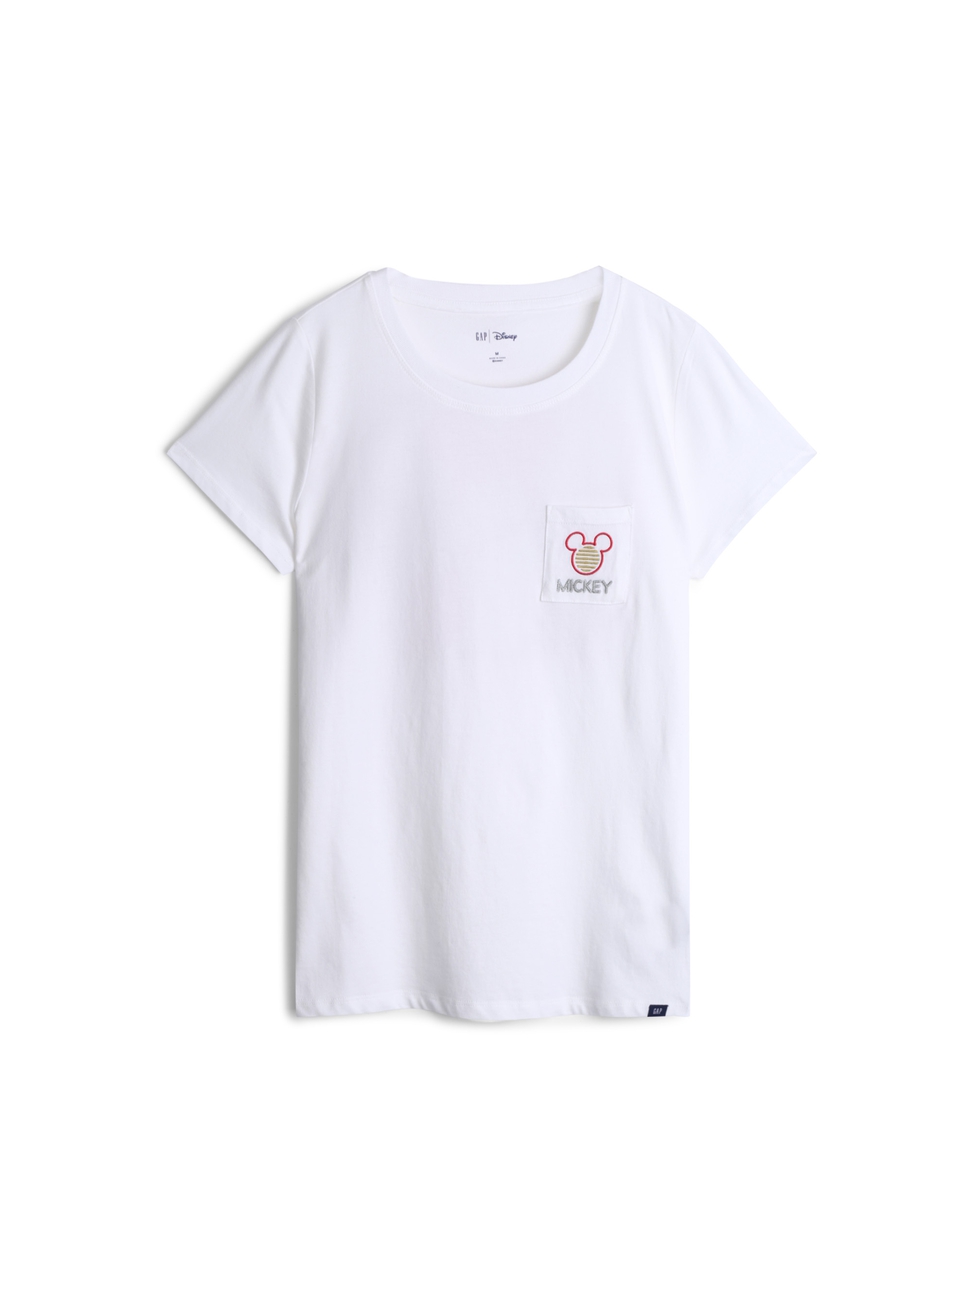 女裝|Gap x Disney迪士尼聯名 米奇米妮棉質舒適圓領短袖T恤短袖T恤-白顏色